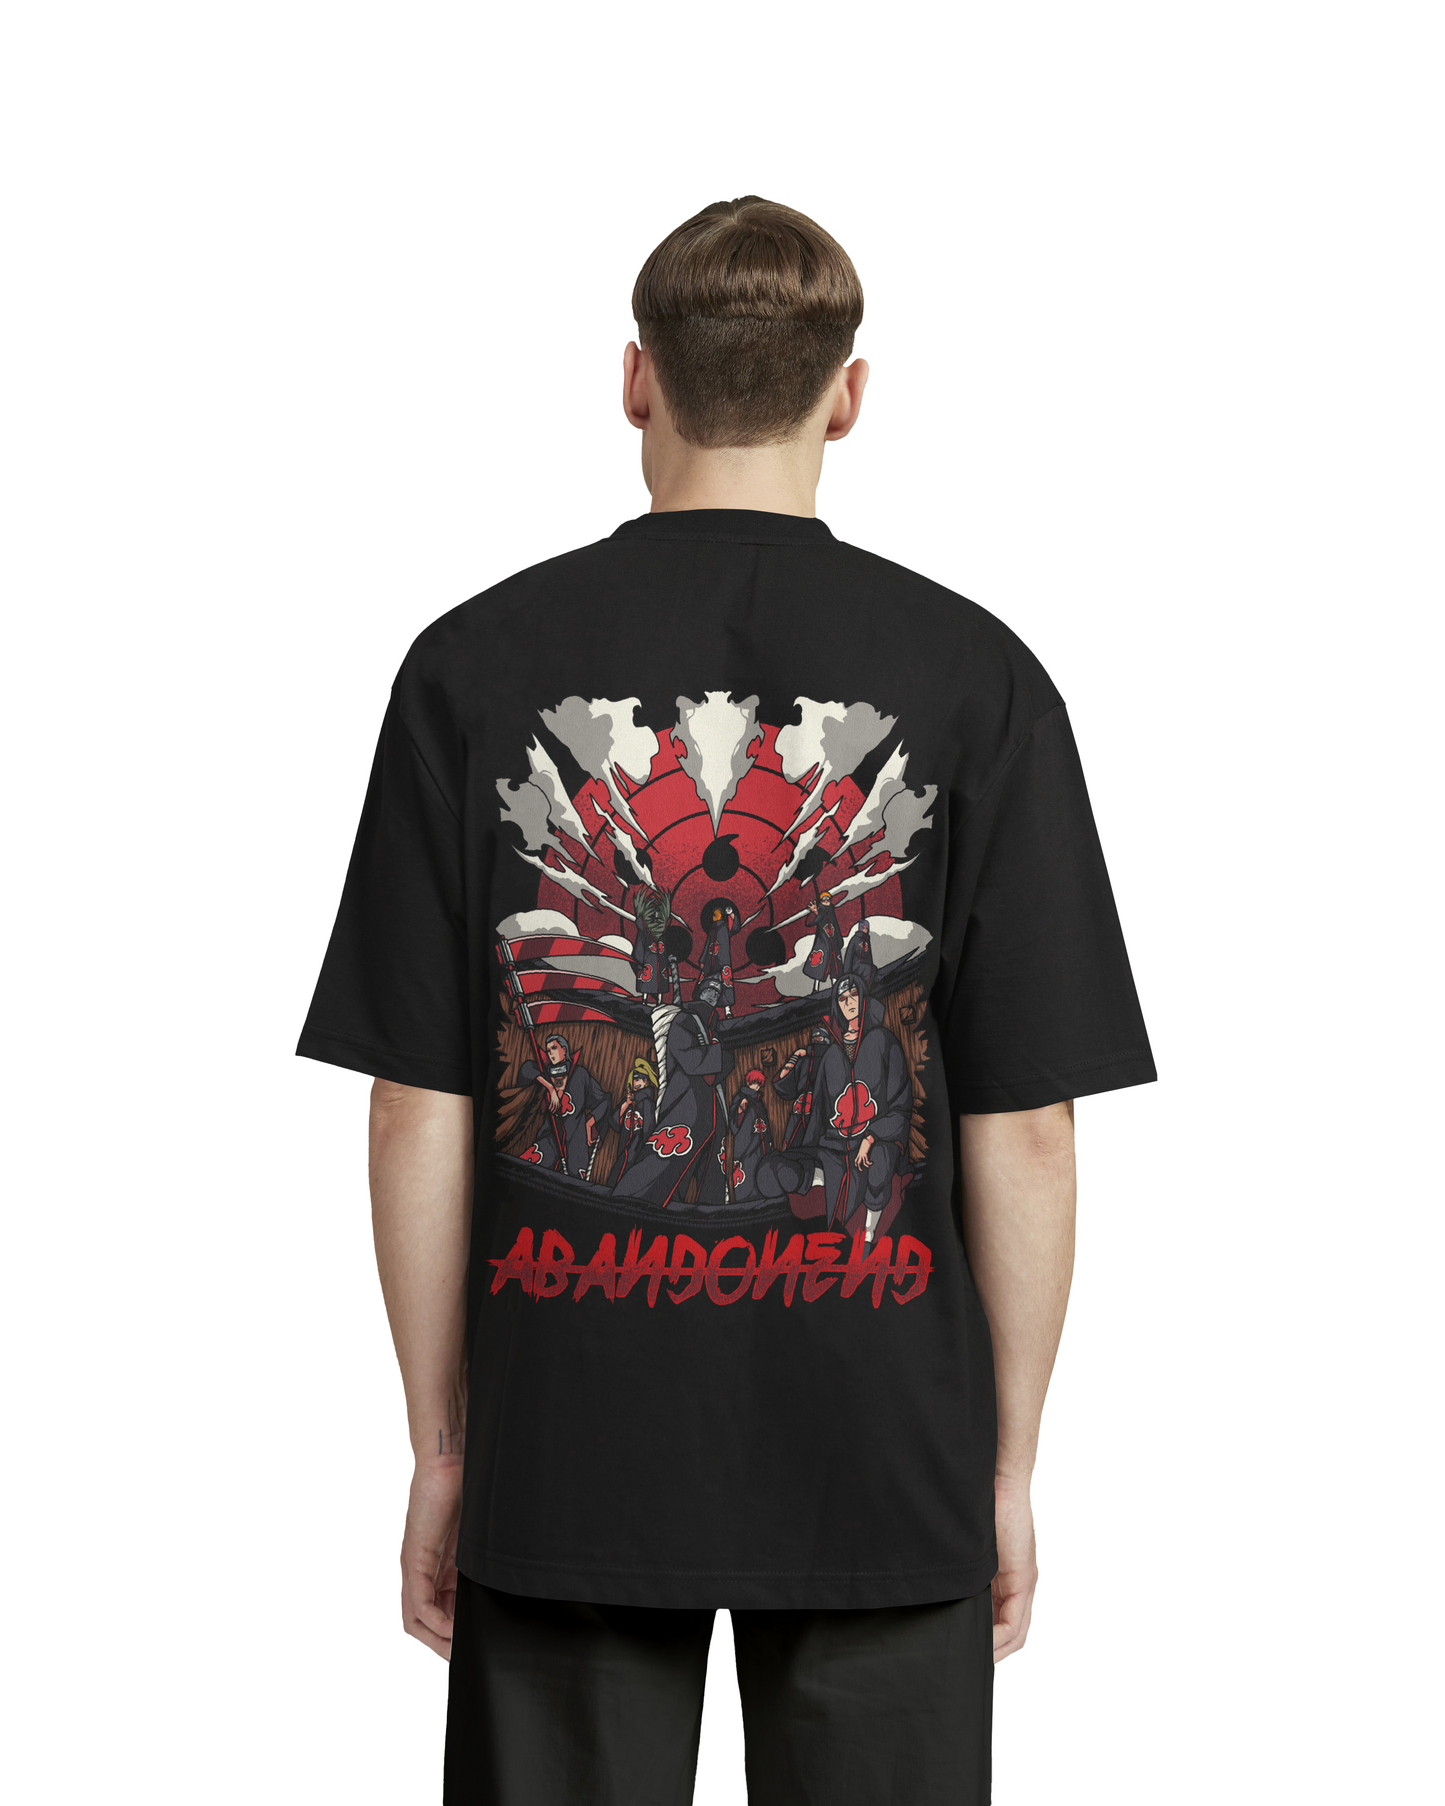 "AKATSUKI x ABANDONED" - Oversized Shirt